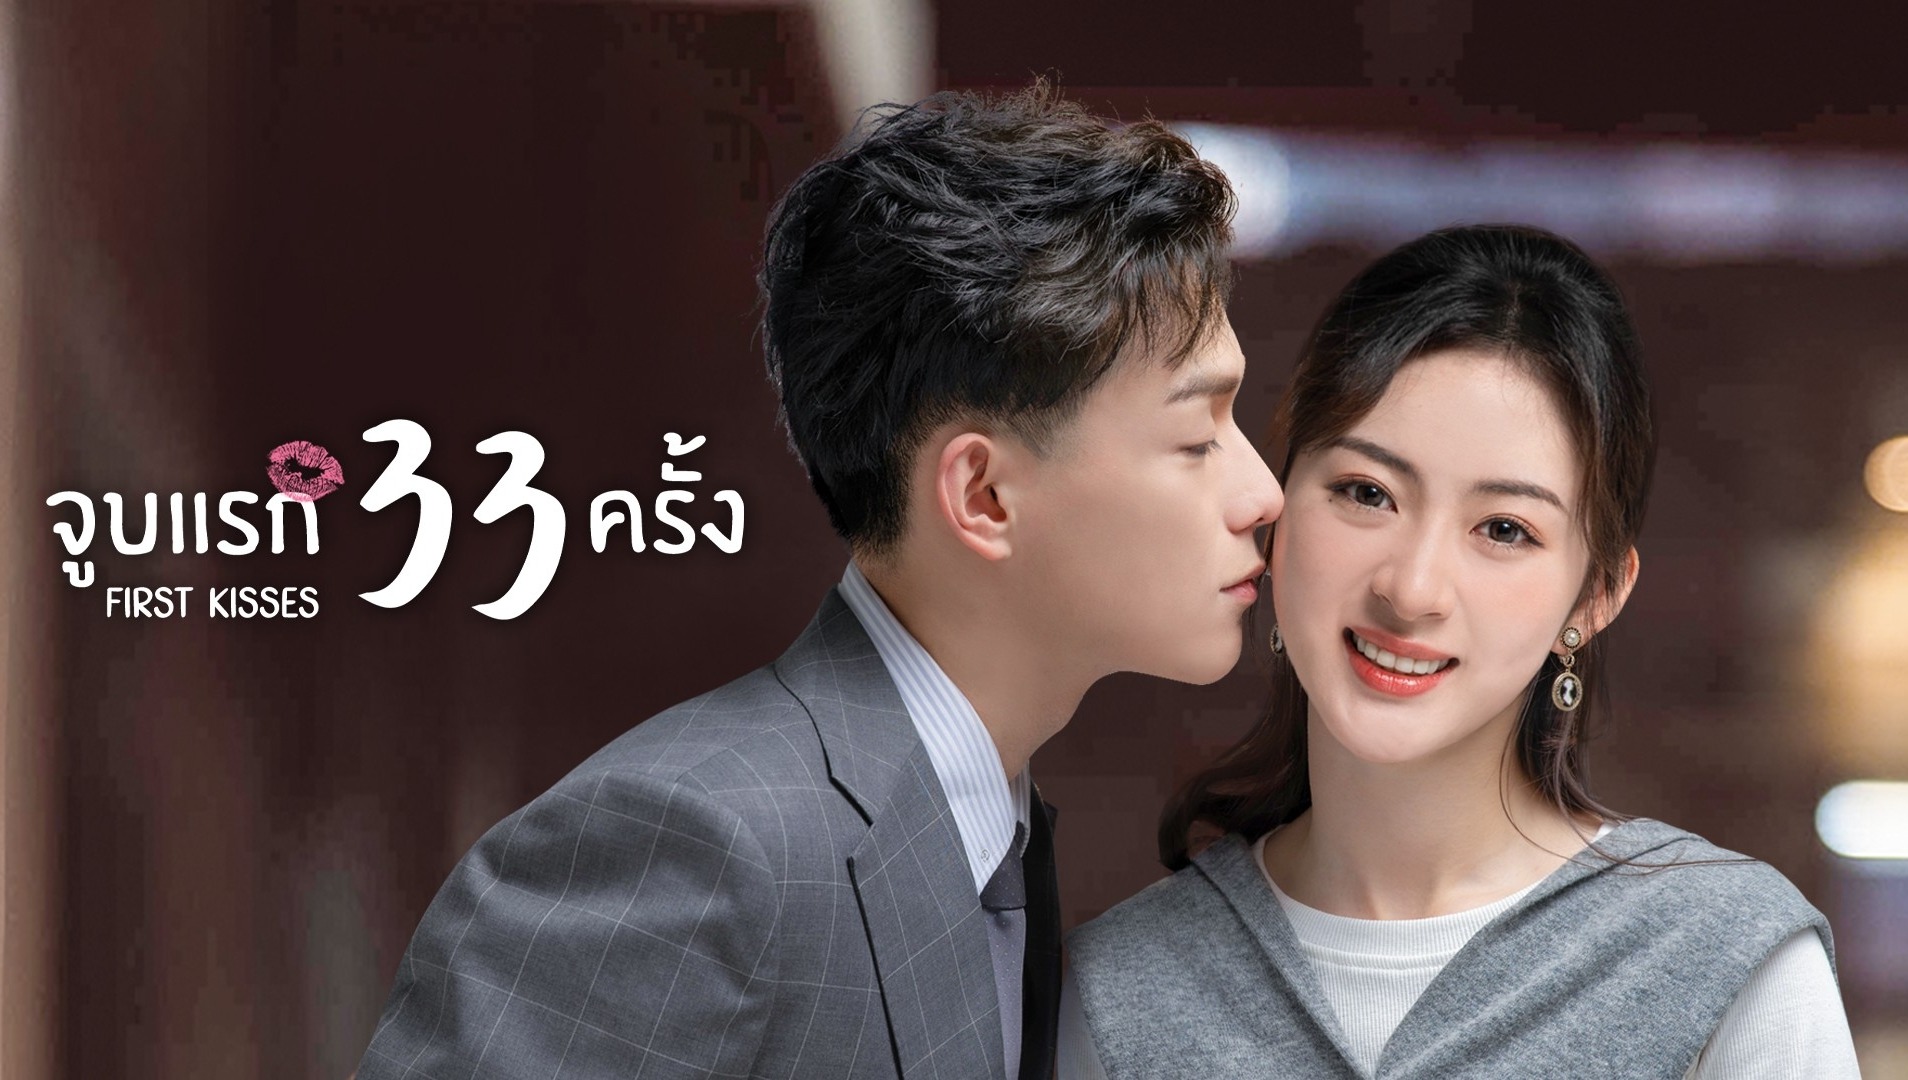 ดูซีรี่ย์จีน First Kisses (2023) จูบแรก 33 ครั้ง ซับไทย